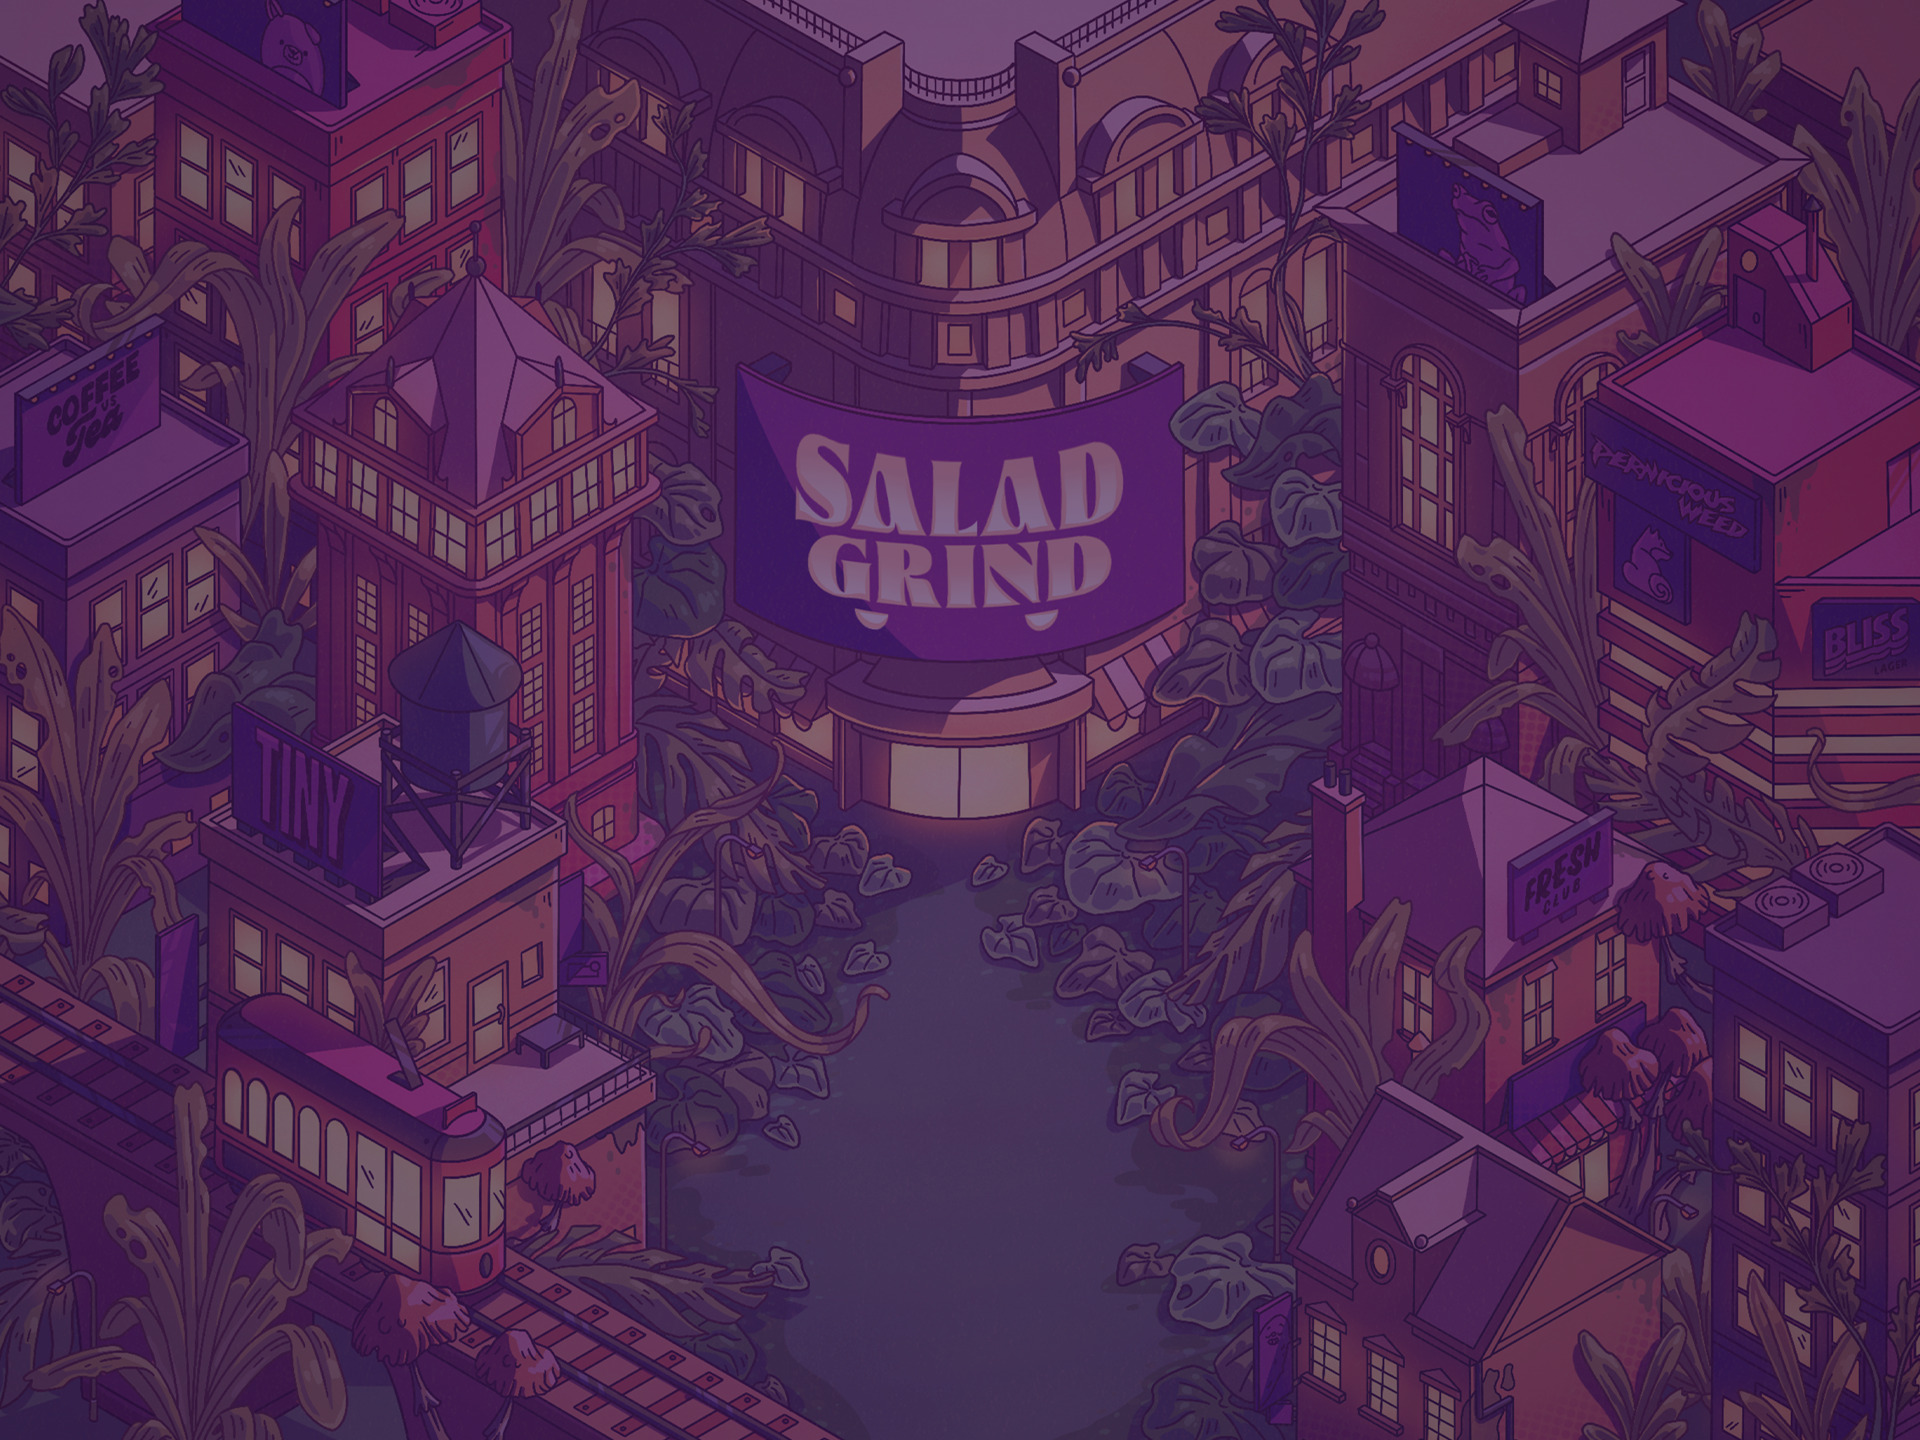 Salad Grind background